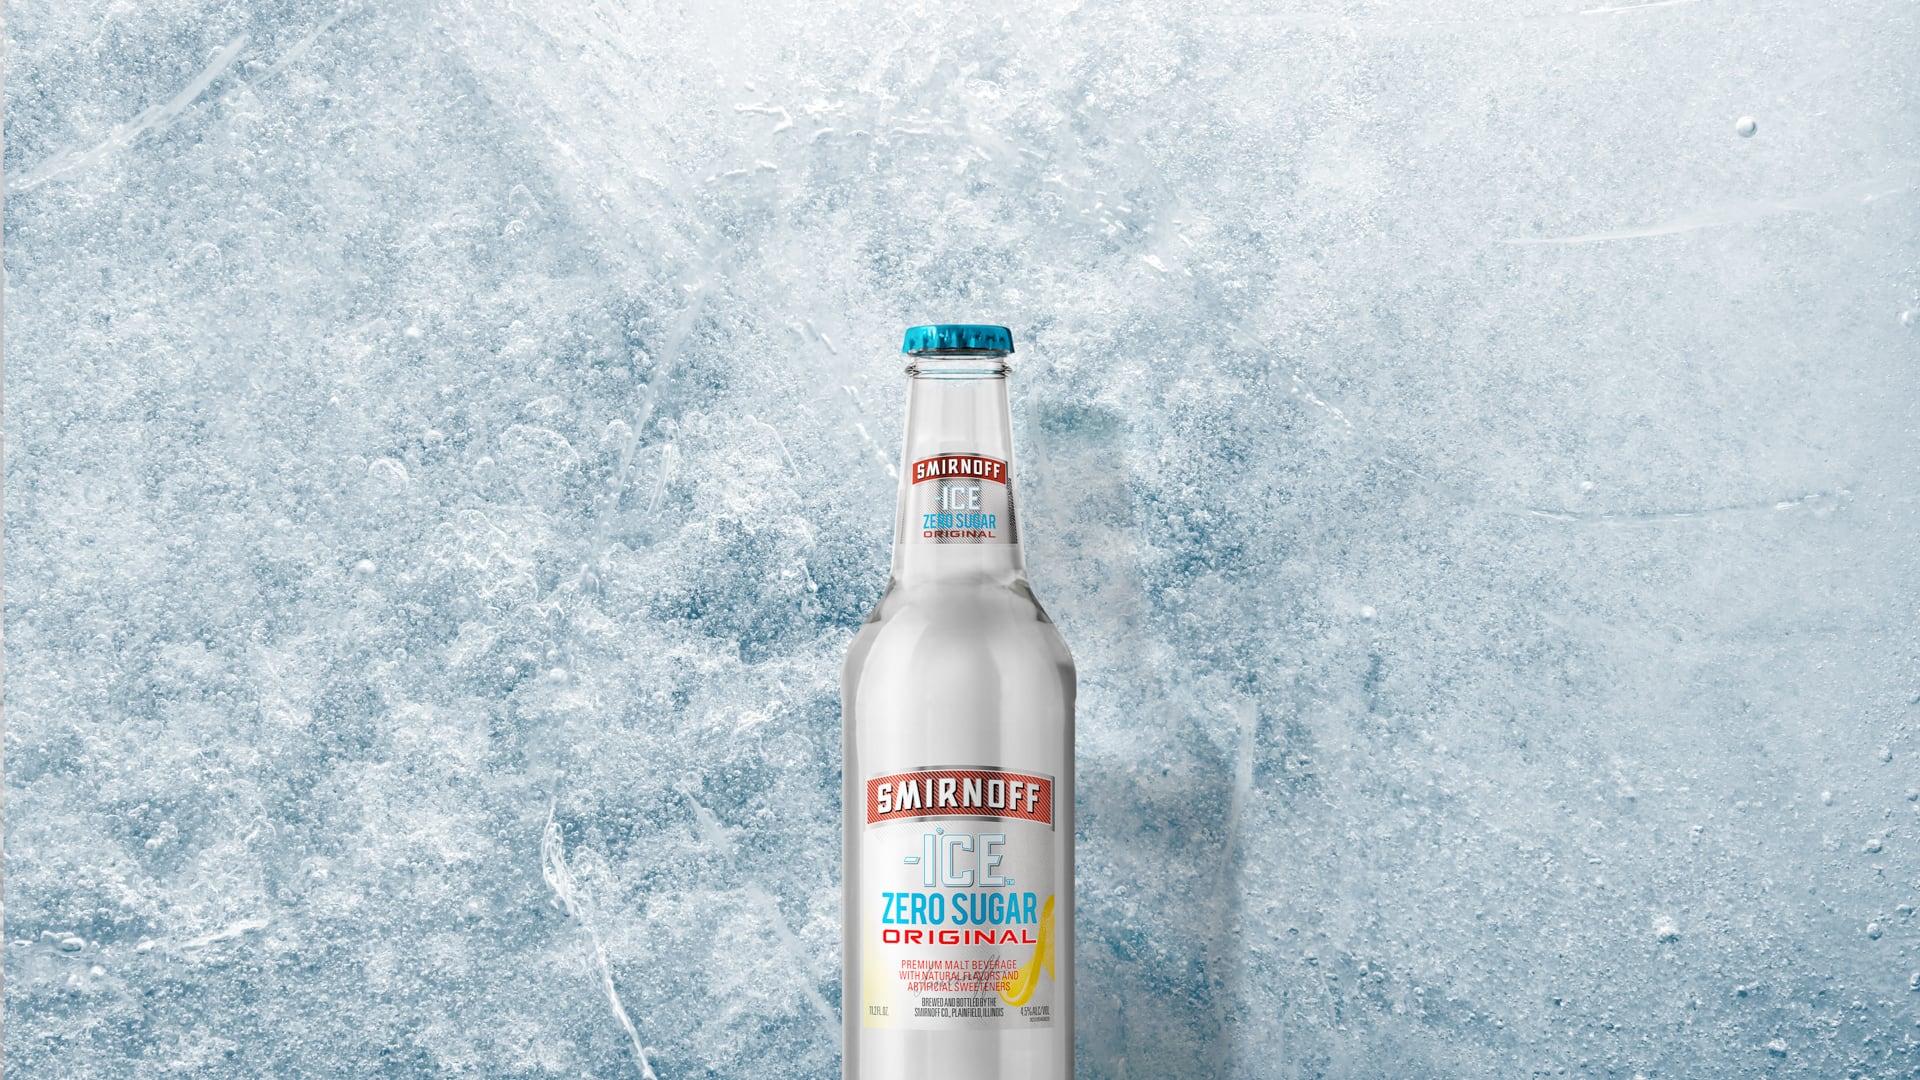 Smirnoff Ice Original Zero Sugar on a Icy background